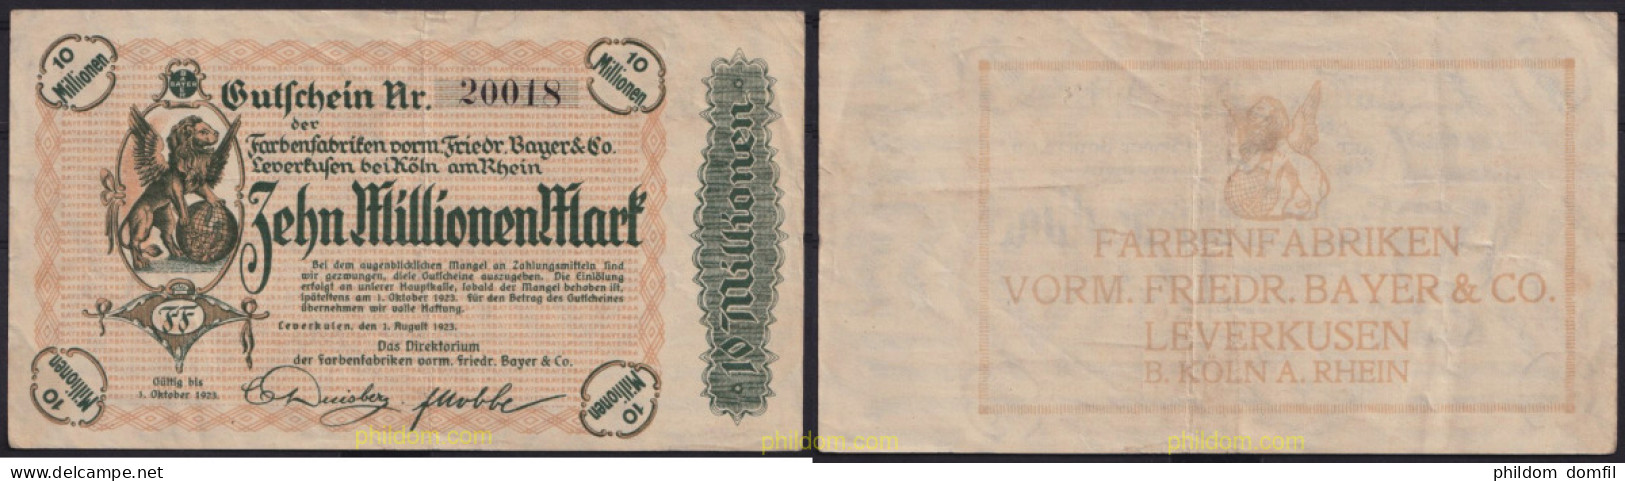 3671 ALEMANIA 1923 GERMANY 10000000 MARK 1923 LEVERKUSEN FARBENFABRIKEN VORM FRIEDR. BAYER & CO - Amministrazione Del Debito